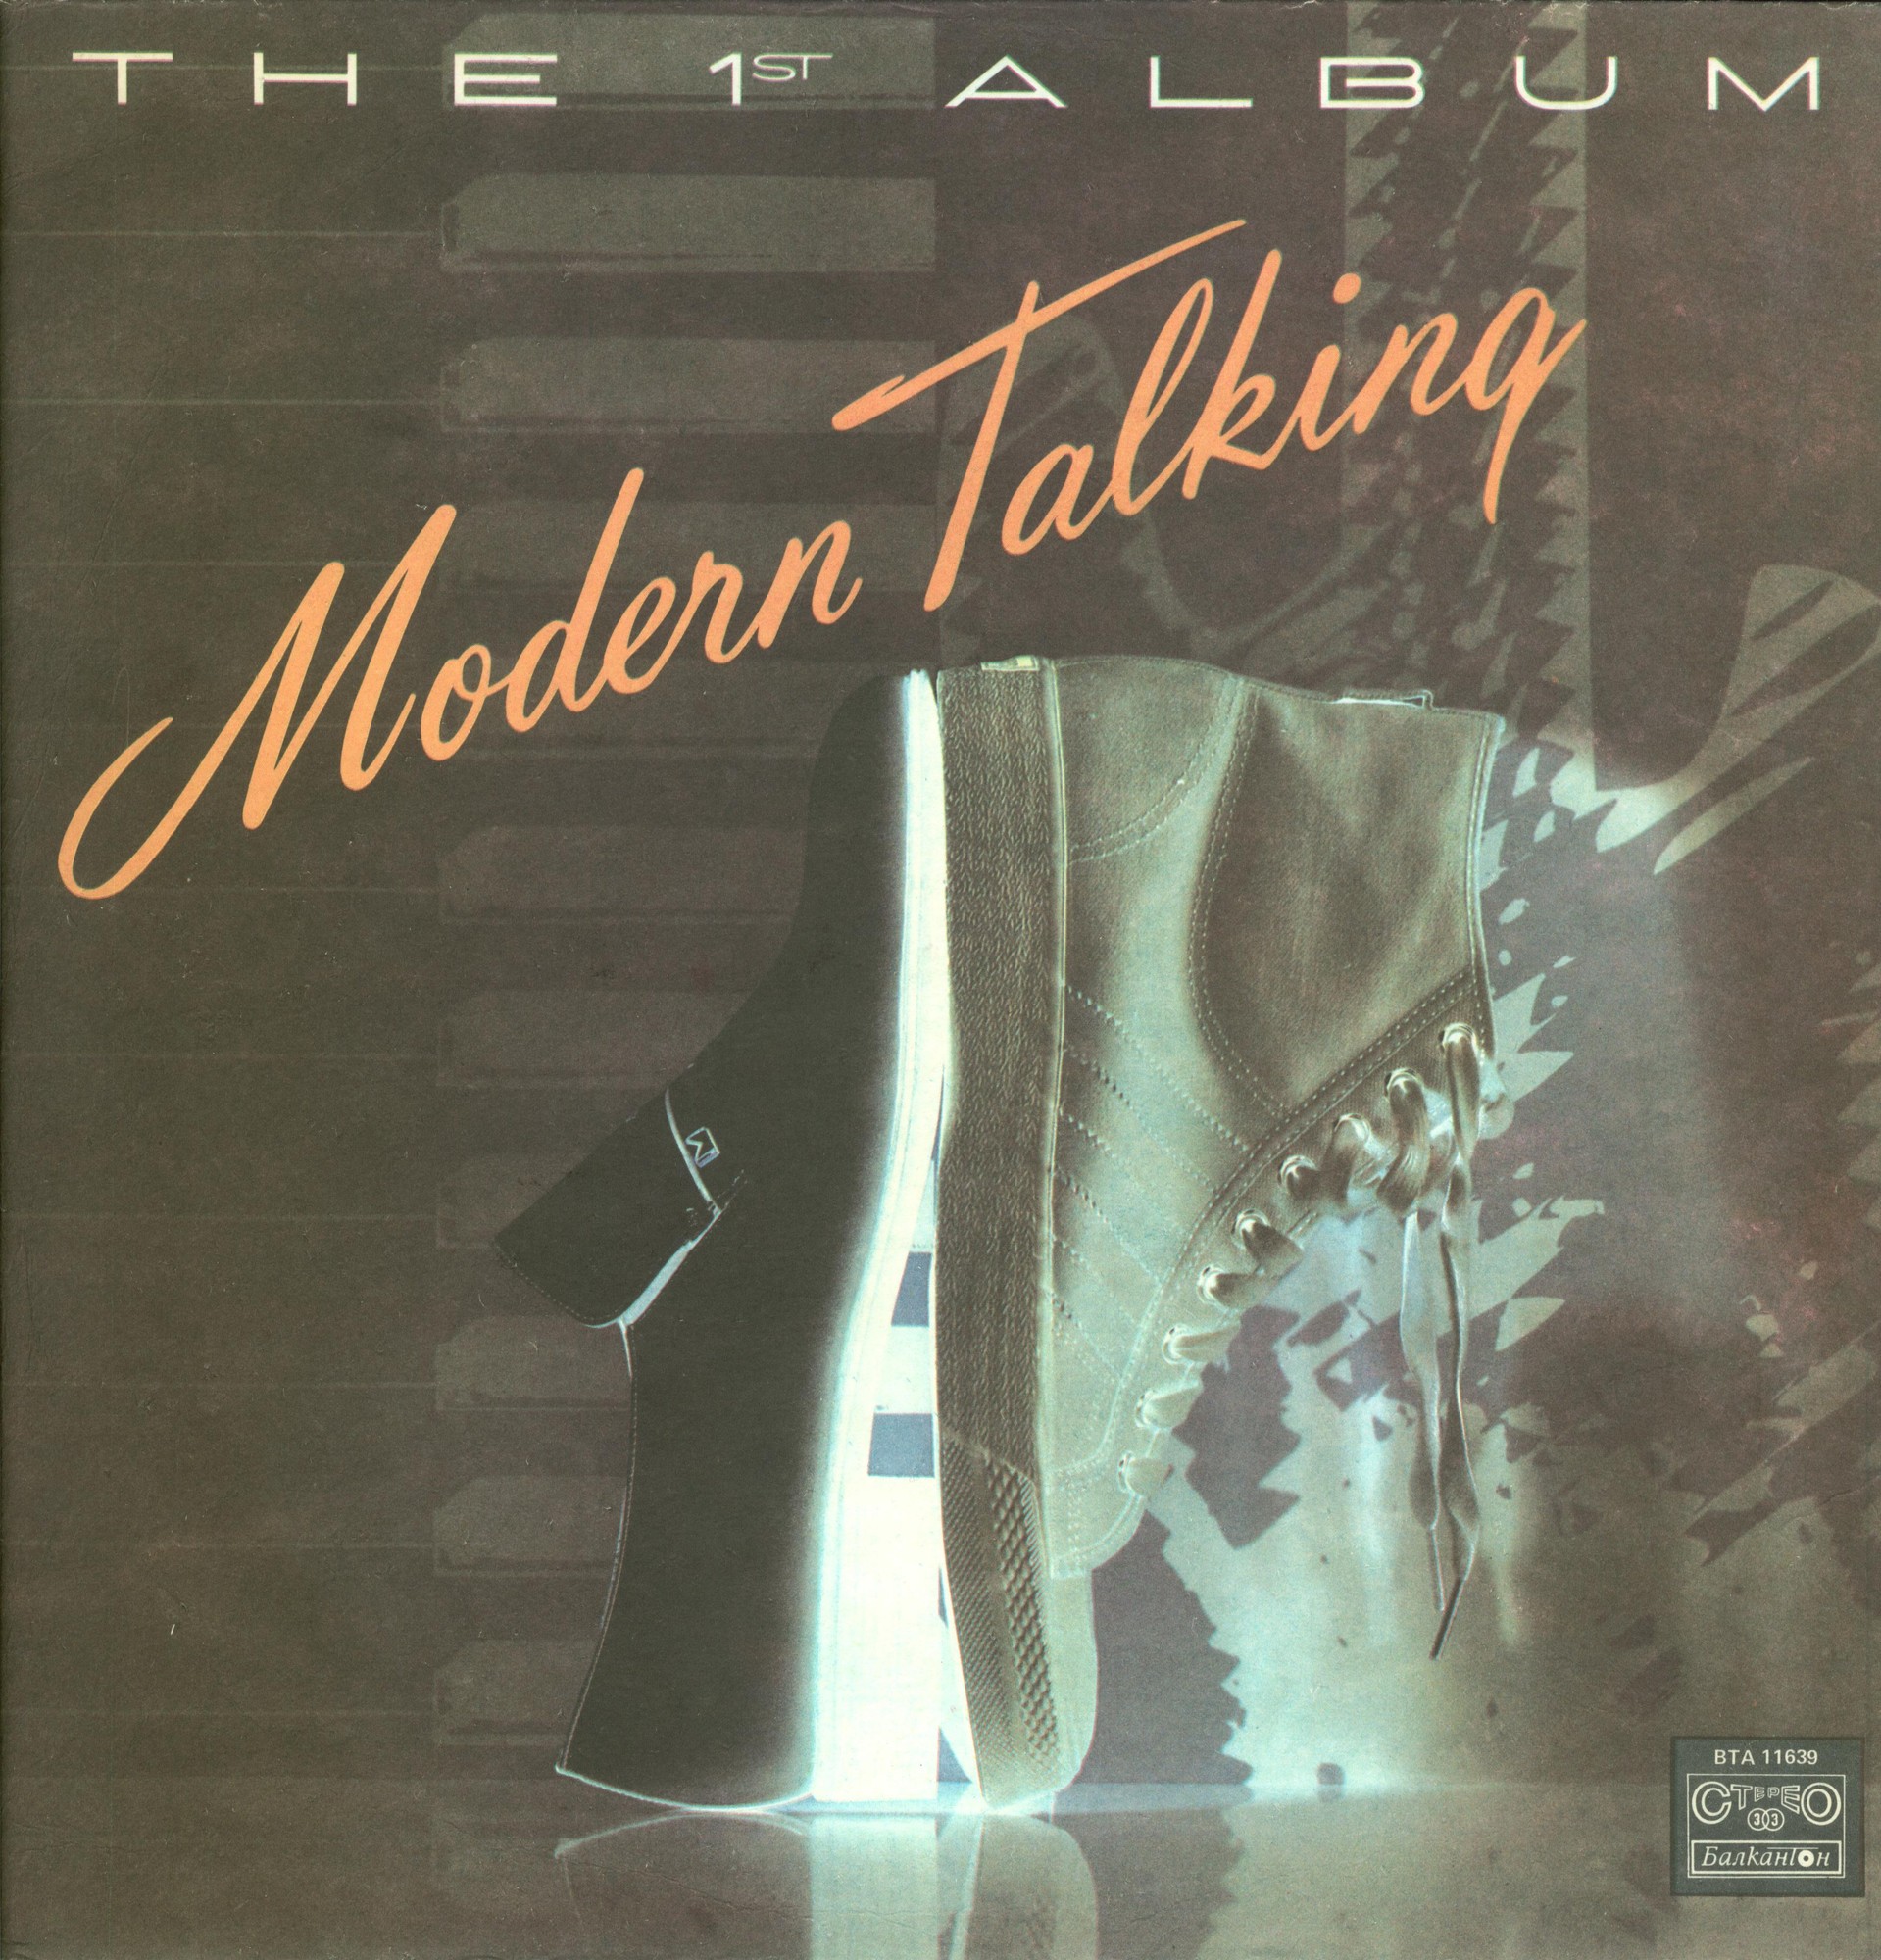 Модърн Токинг. Първият албум